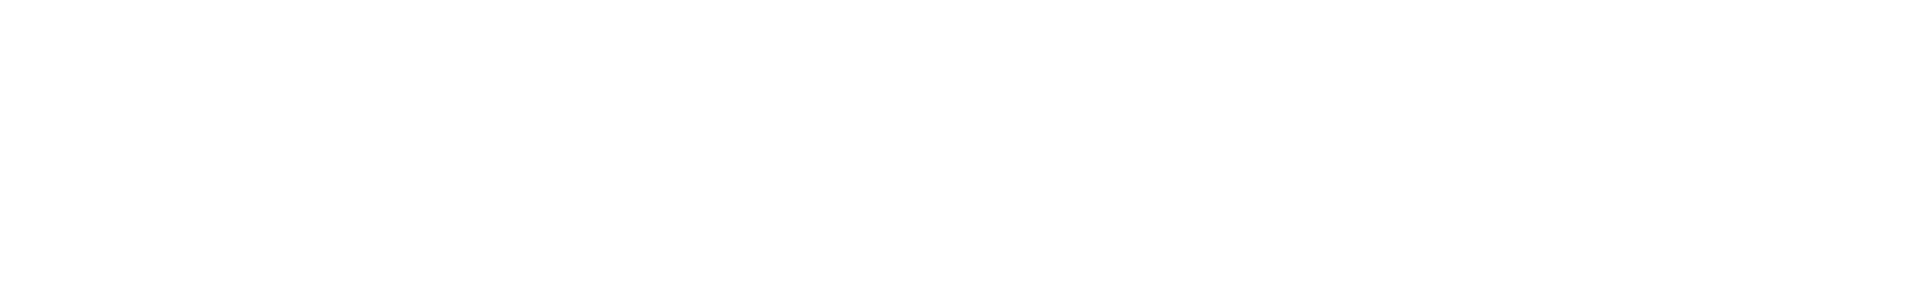 357-217-tranesiteswhite-logo.png